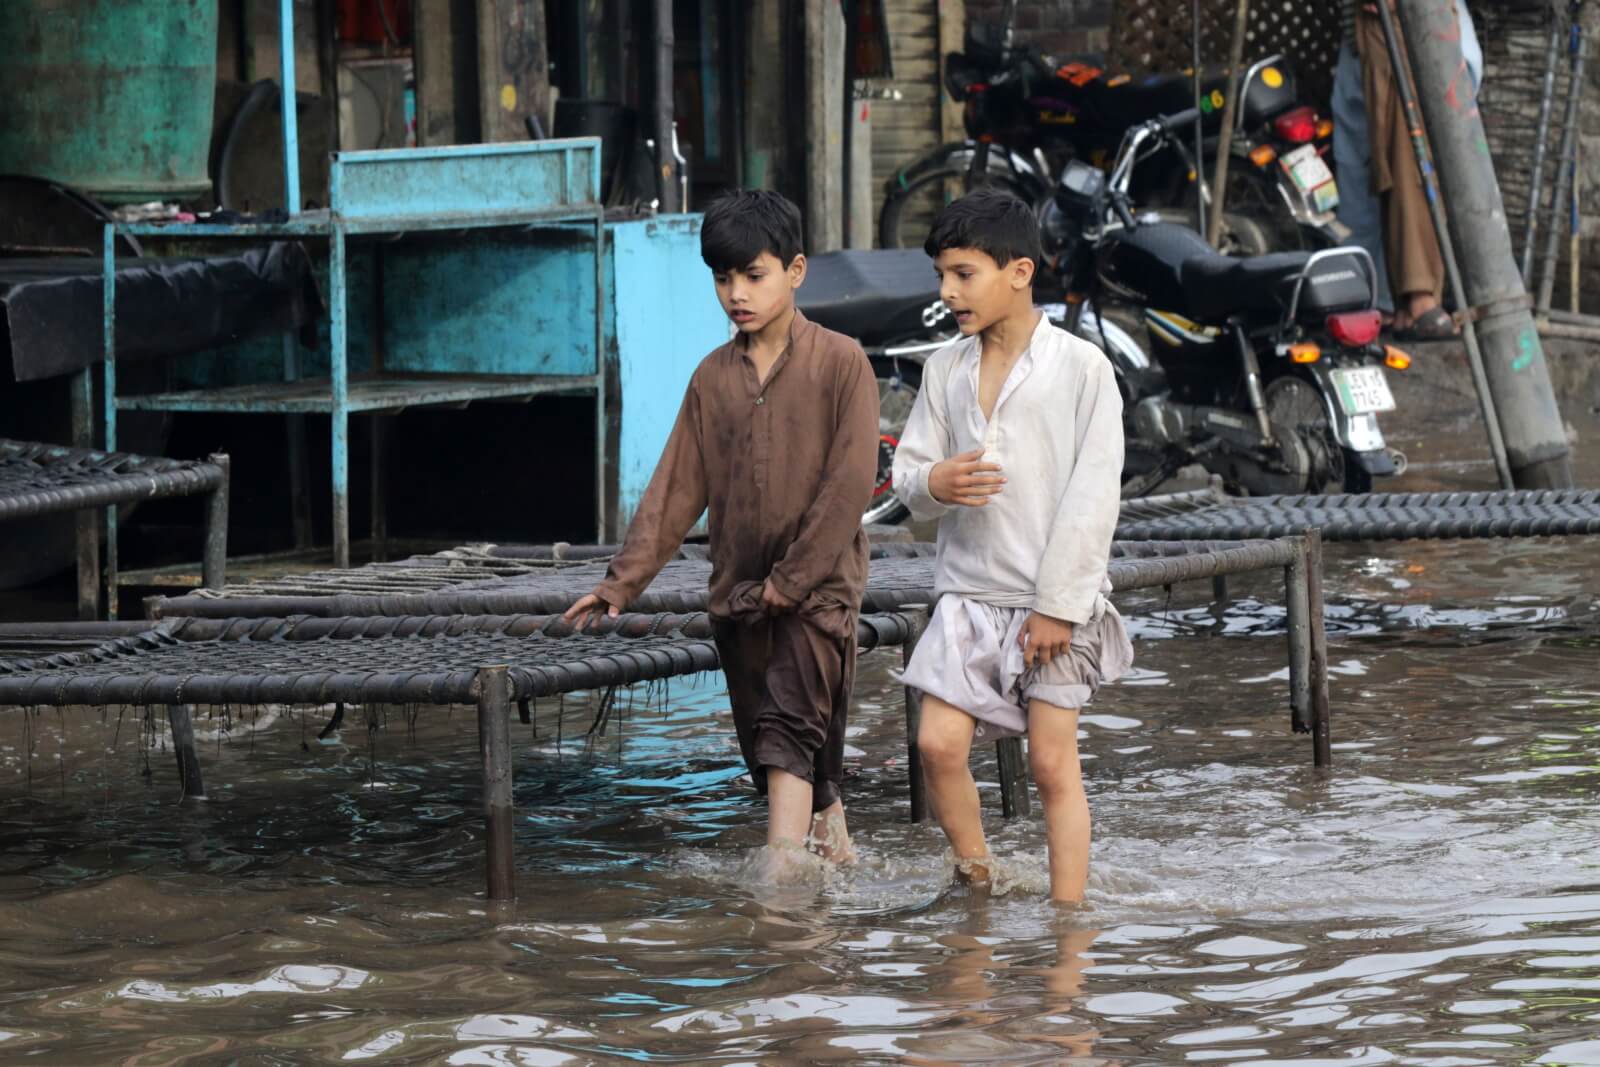 Powodzie w Pakistanie fot. EPA/RAHAT DAR
